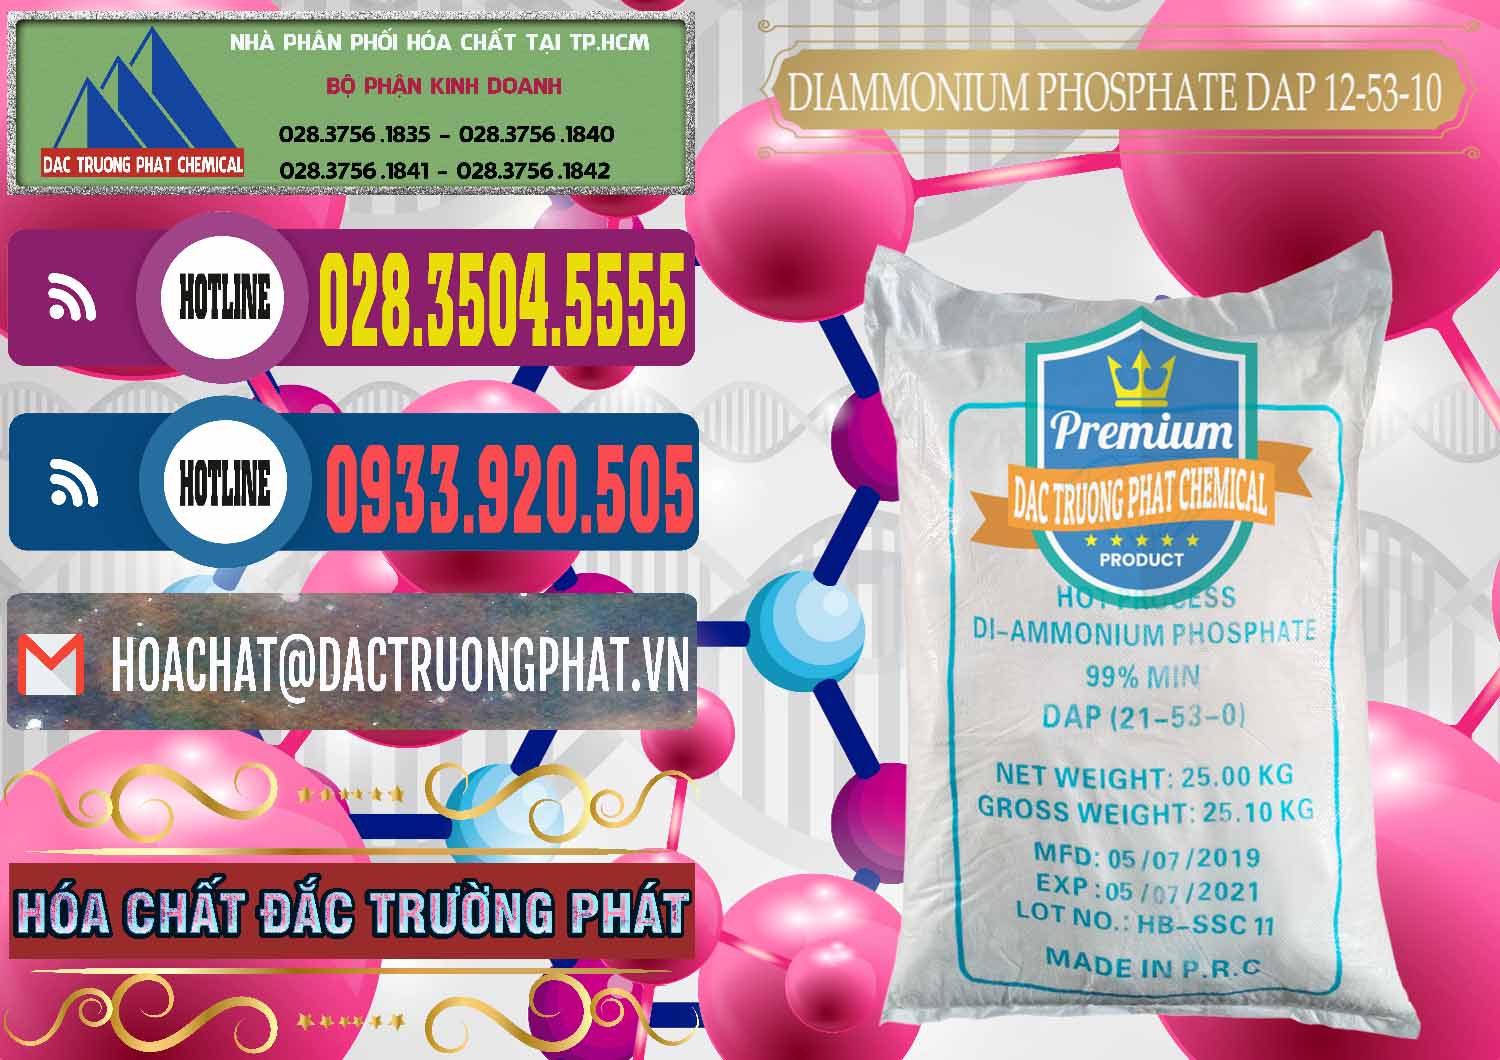 Nhà cung cấp và bán DAP - Diammonium Phosphate Trung Quốc China - 0319 - Công ty cung cấp - phân phối hóa chất tại TP.HCM - muabanhoachat.com.vn